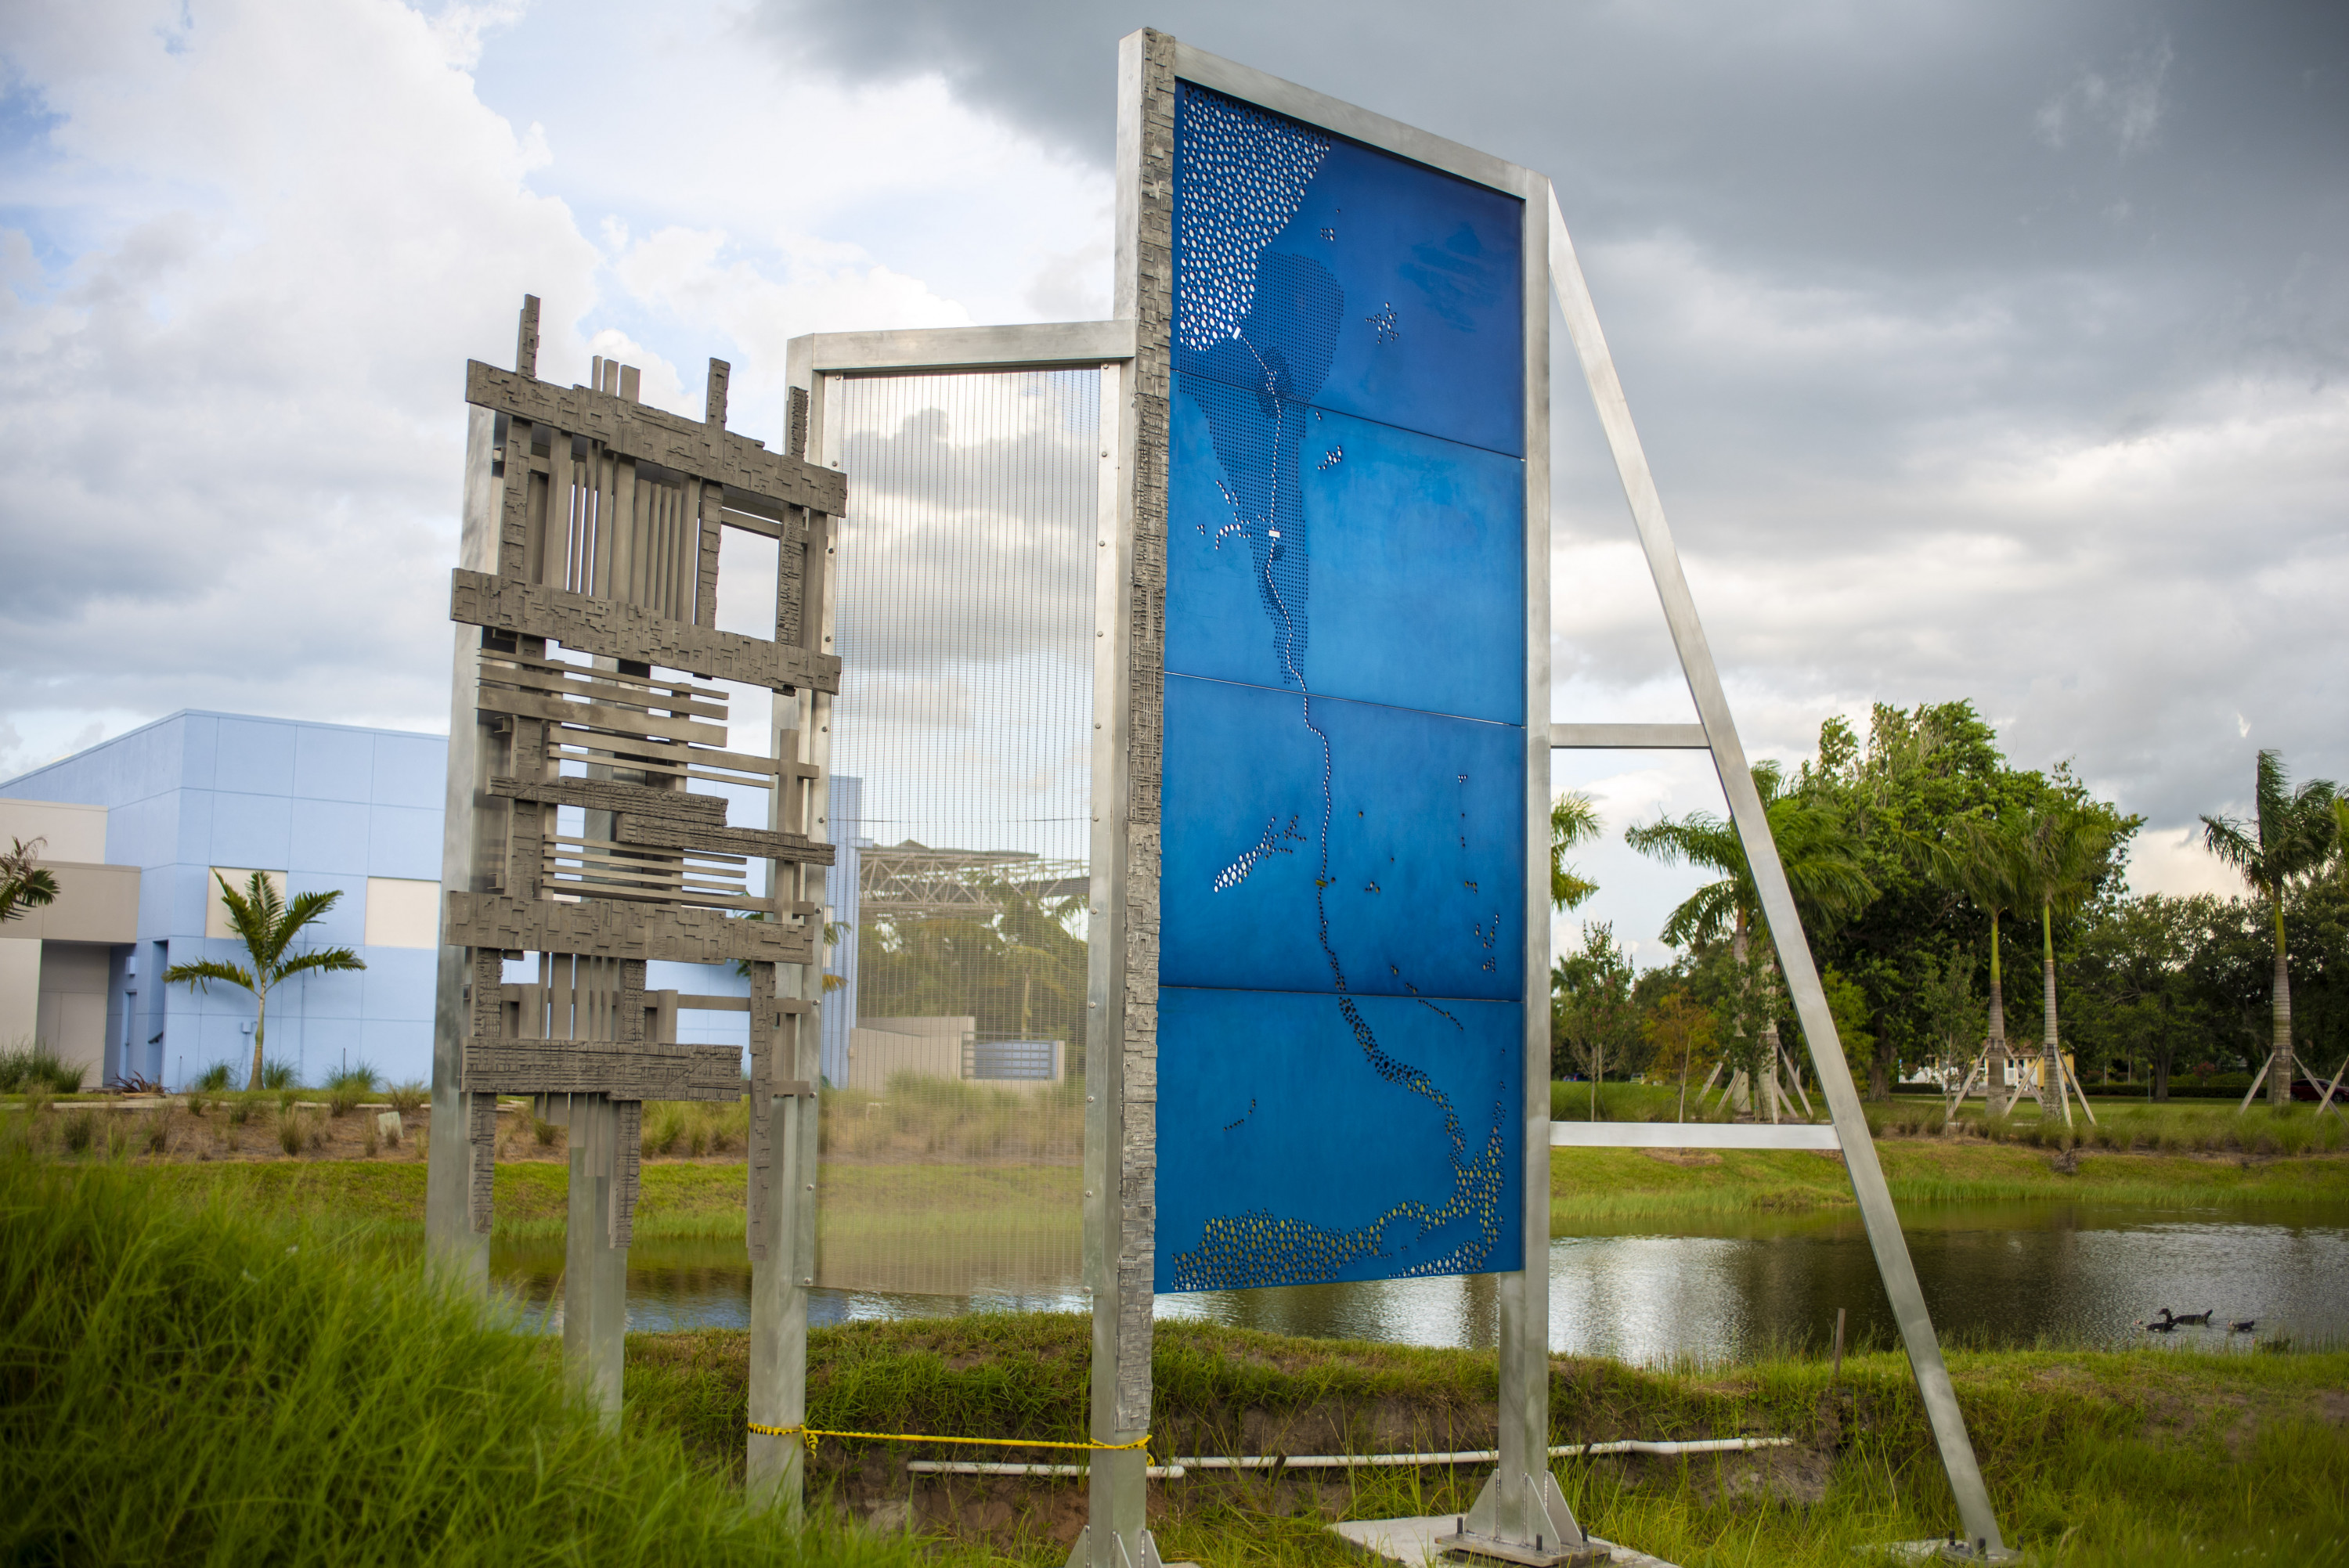 “Caloosahatchee Water Wall” by Michael Singer, part of Alliance ArtPark